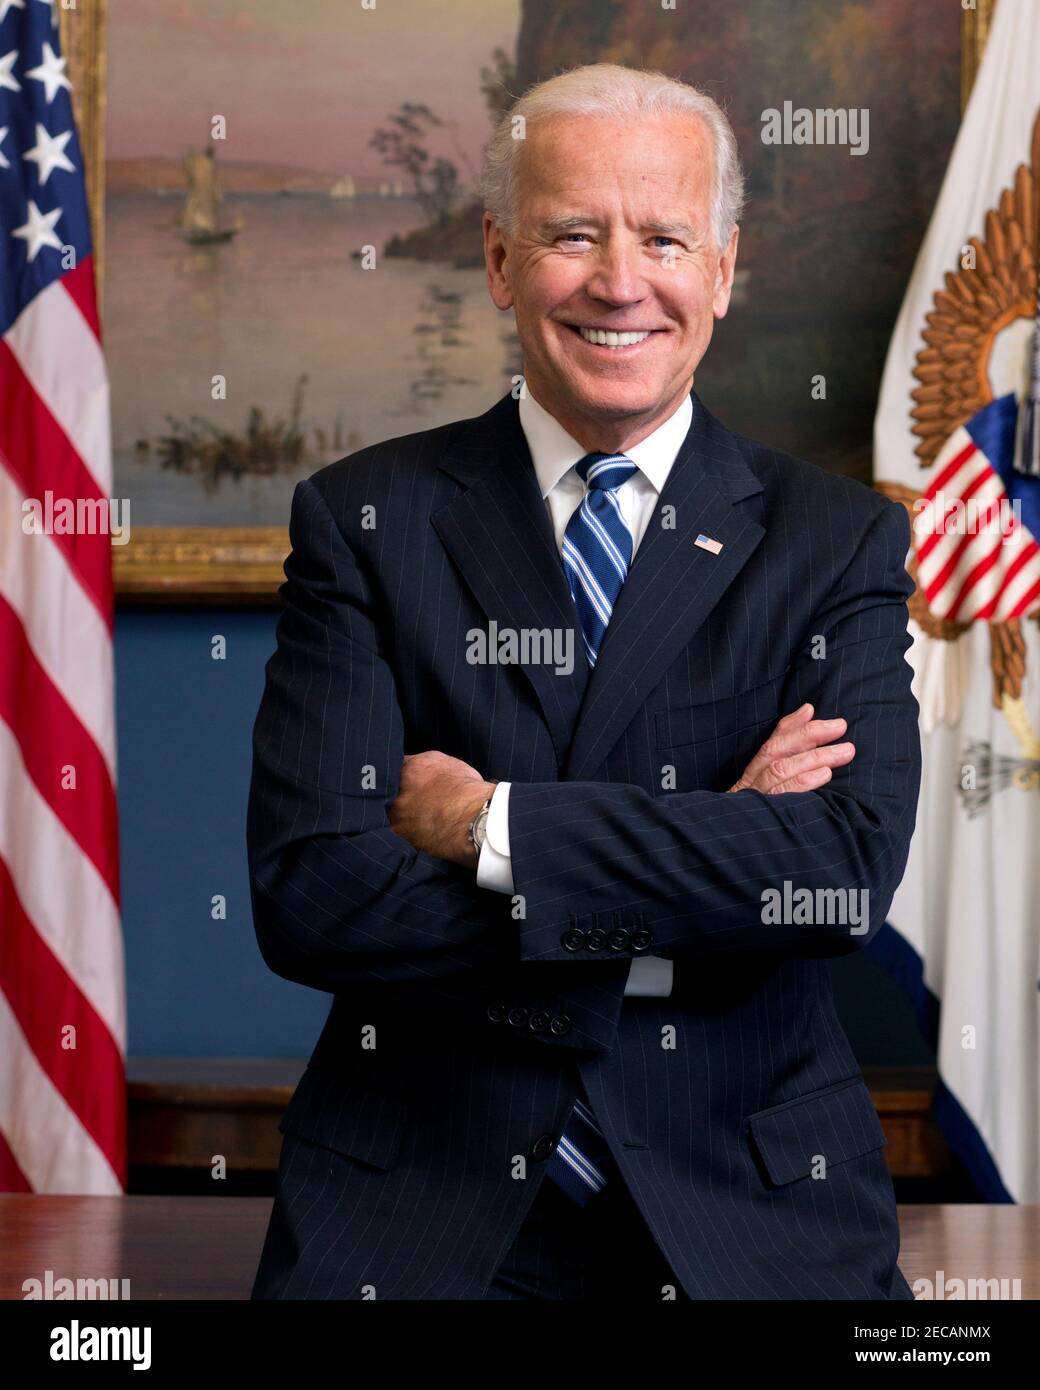 Joe Biden. Porträt des Präsidenten der Vereinigten Staaten von 46th, Joseph Robinette Biden Jr. (b,1942) als Vizepräsident im Jahr 2013. Offizielles Foto des Weißen Hauses. Stockfoto